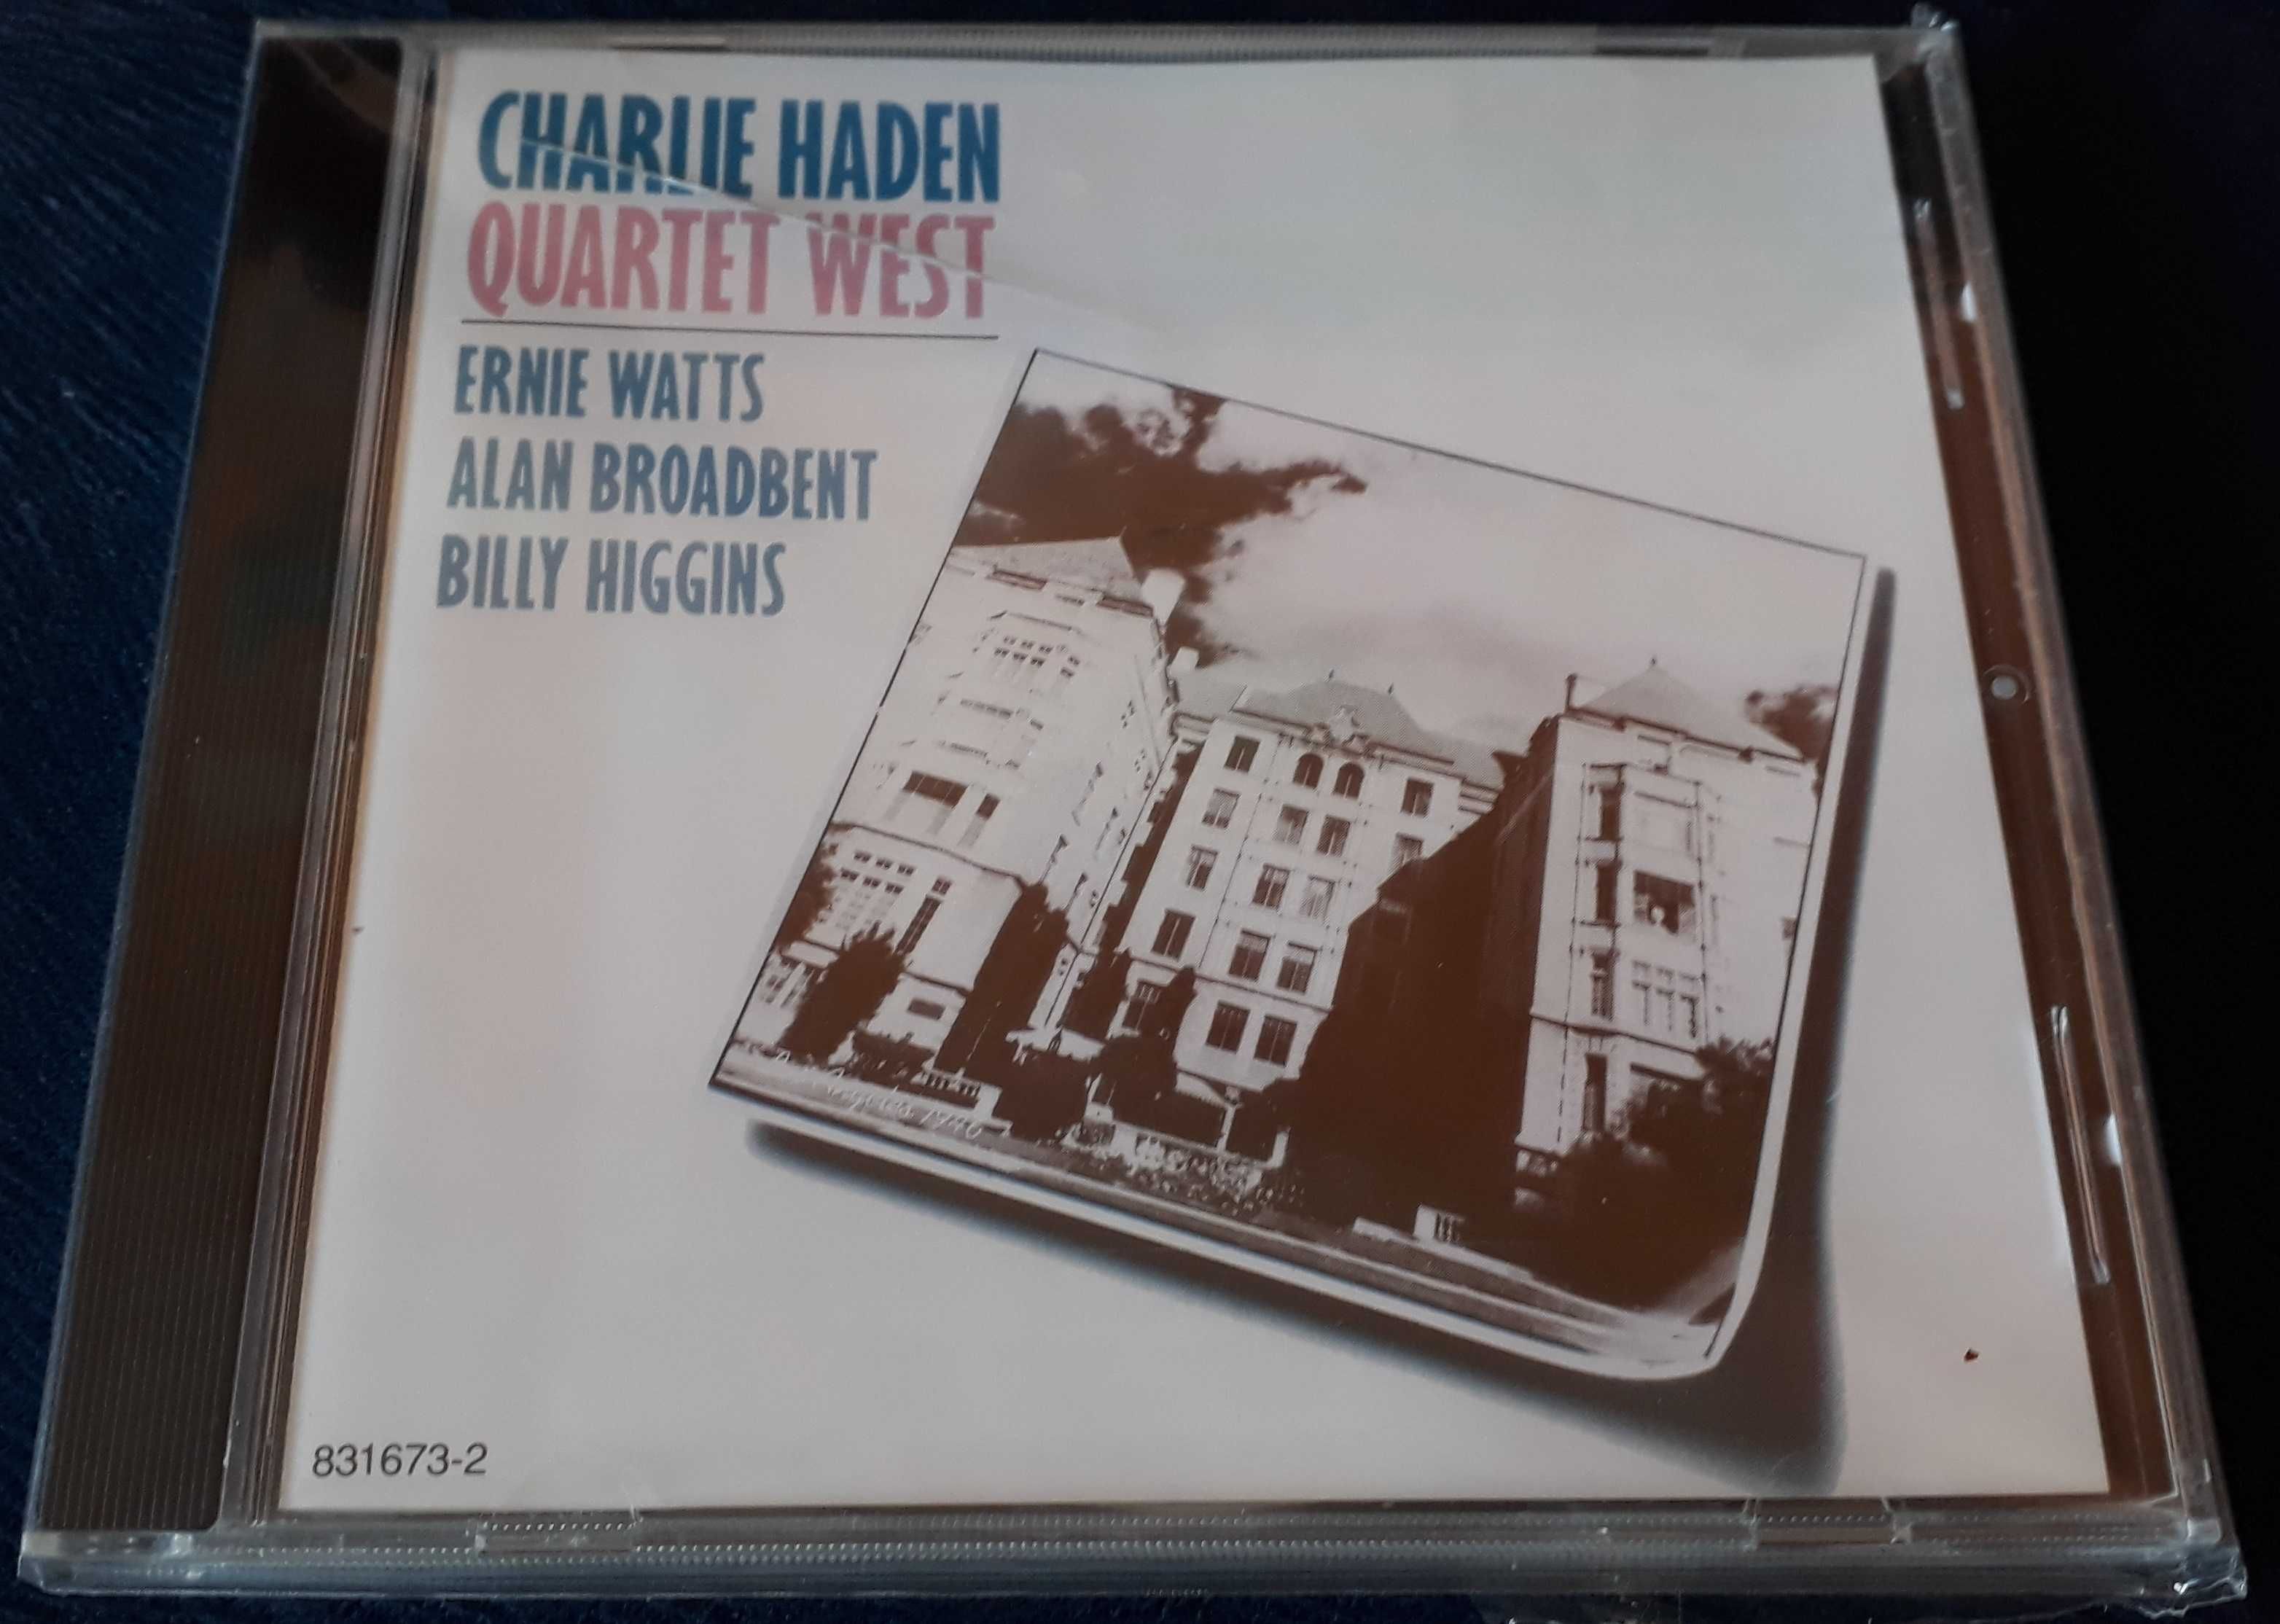 Charlie Haden - Quartet West, Jazz, CD 1987